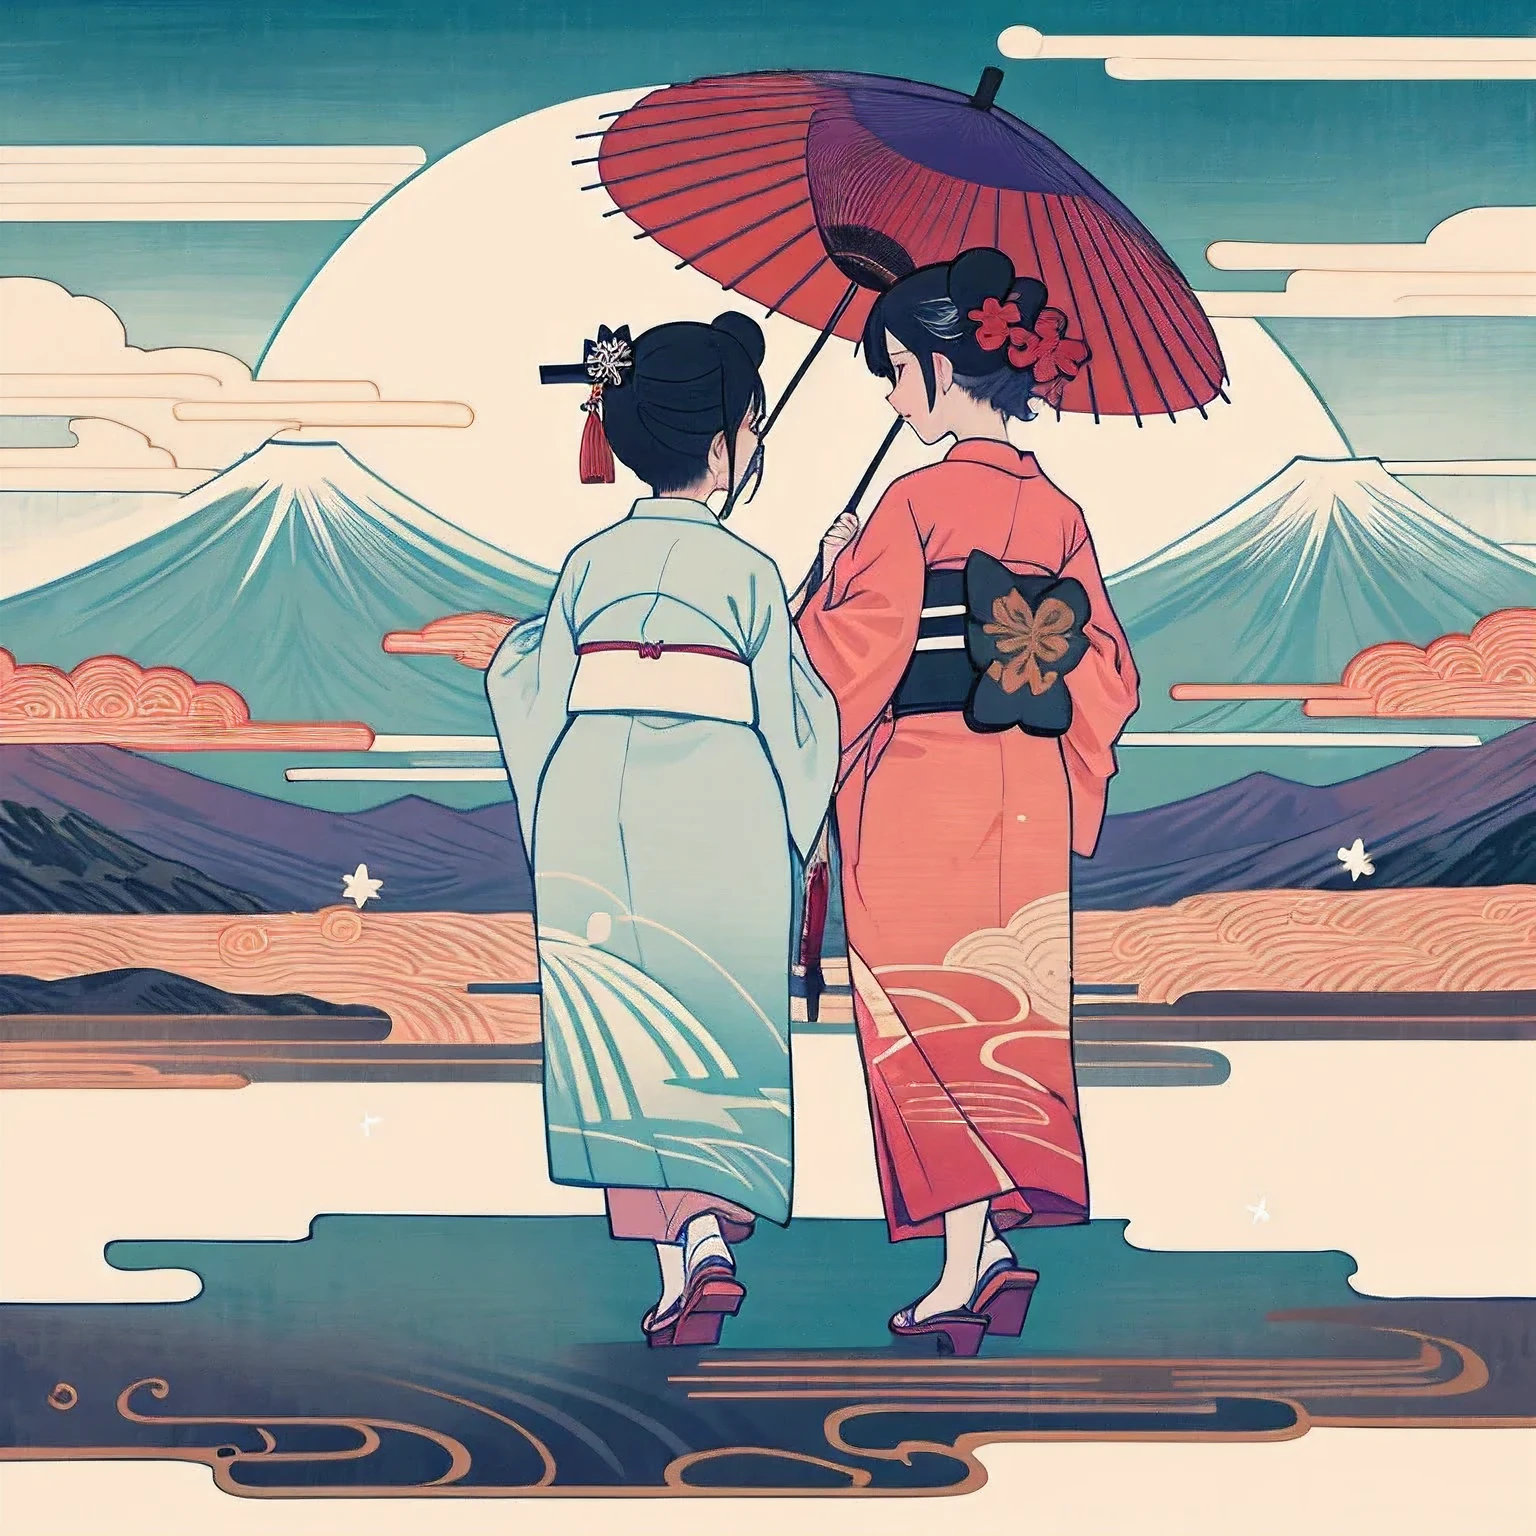 京都の舞妓さん, 二人, 着物を着る, 二人並んで立って歩いている, 二人, 両方とも女性, 白塗りの顔, 背面図, ビューイン 1, 全身アングル, 下駄を履く, 和傘を差して歩く, 紫と白の着物＆赤と白の着物を着て, 背景には大きな富士山が見える., キラキラと輝く幻想的な雰囲気